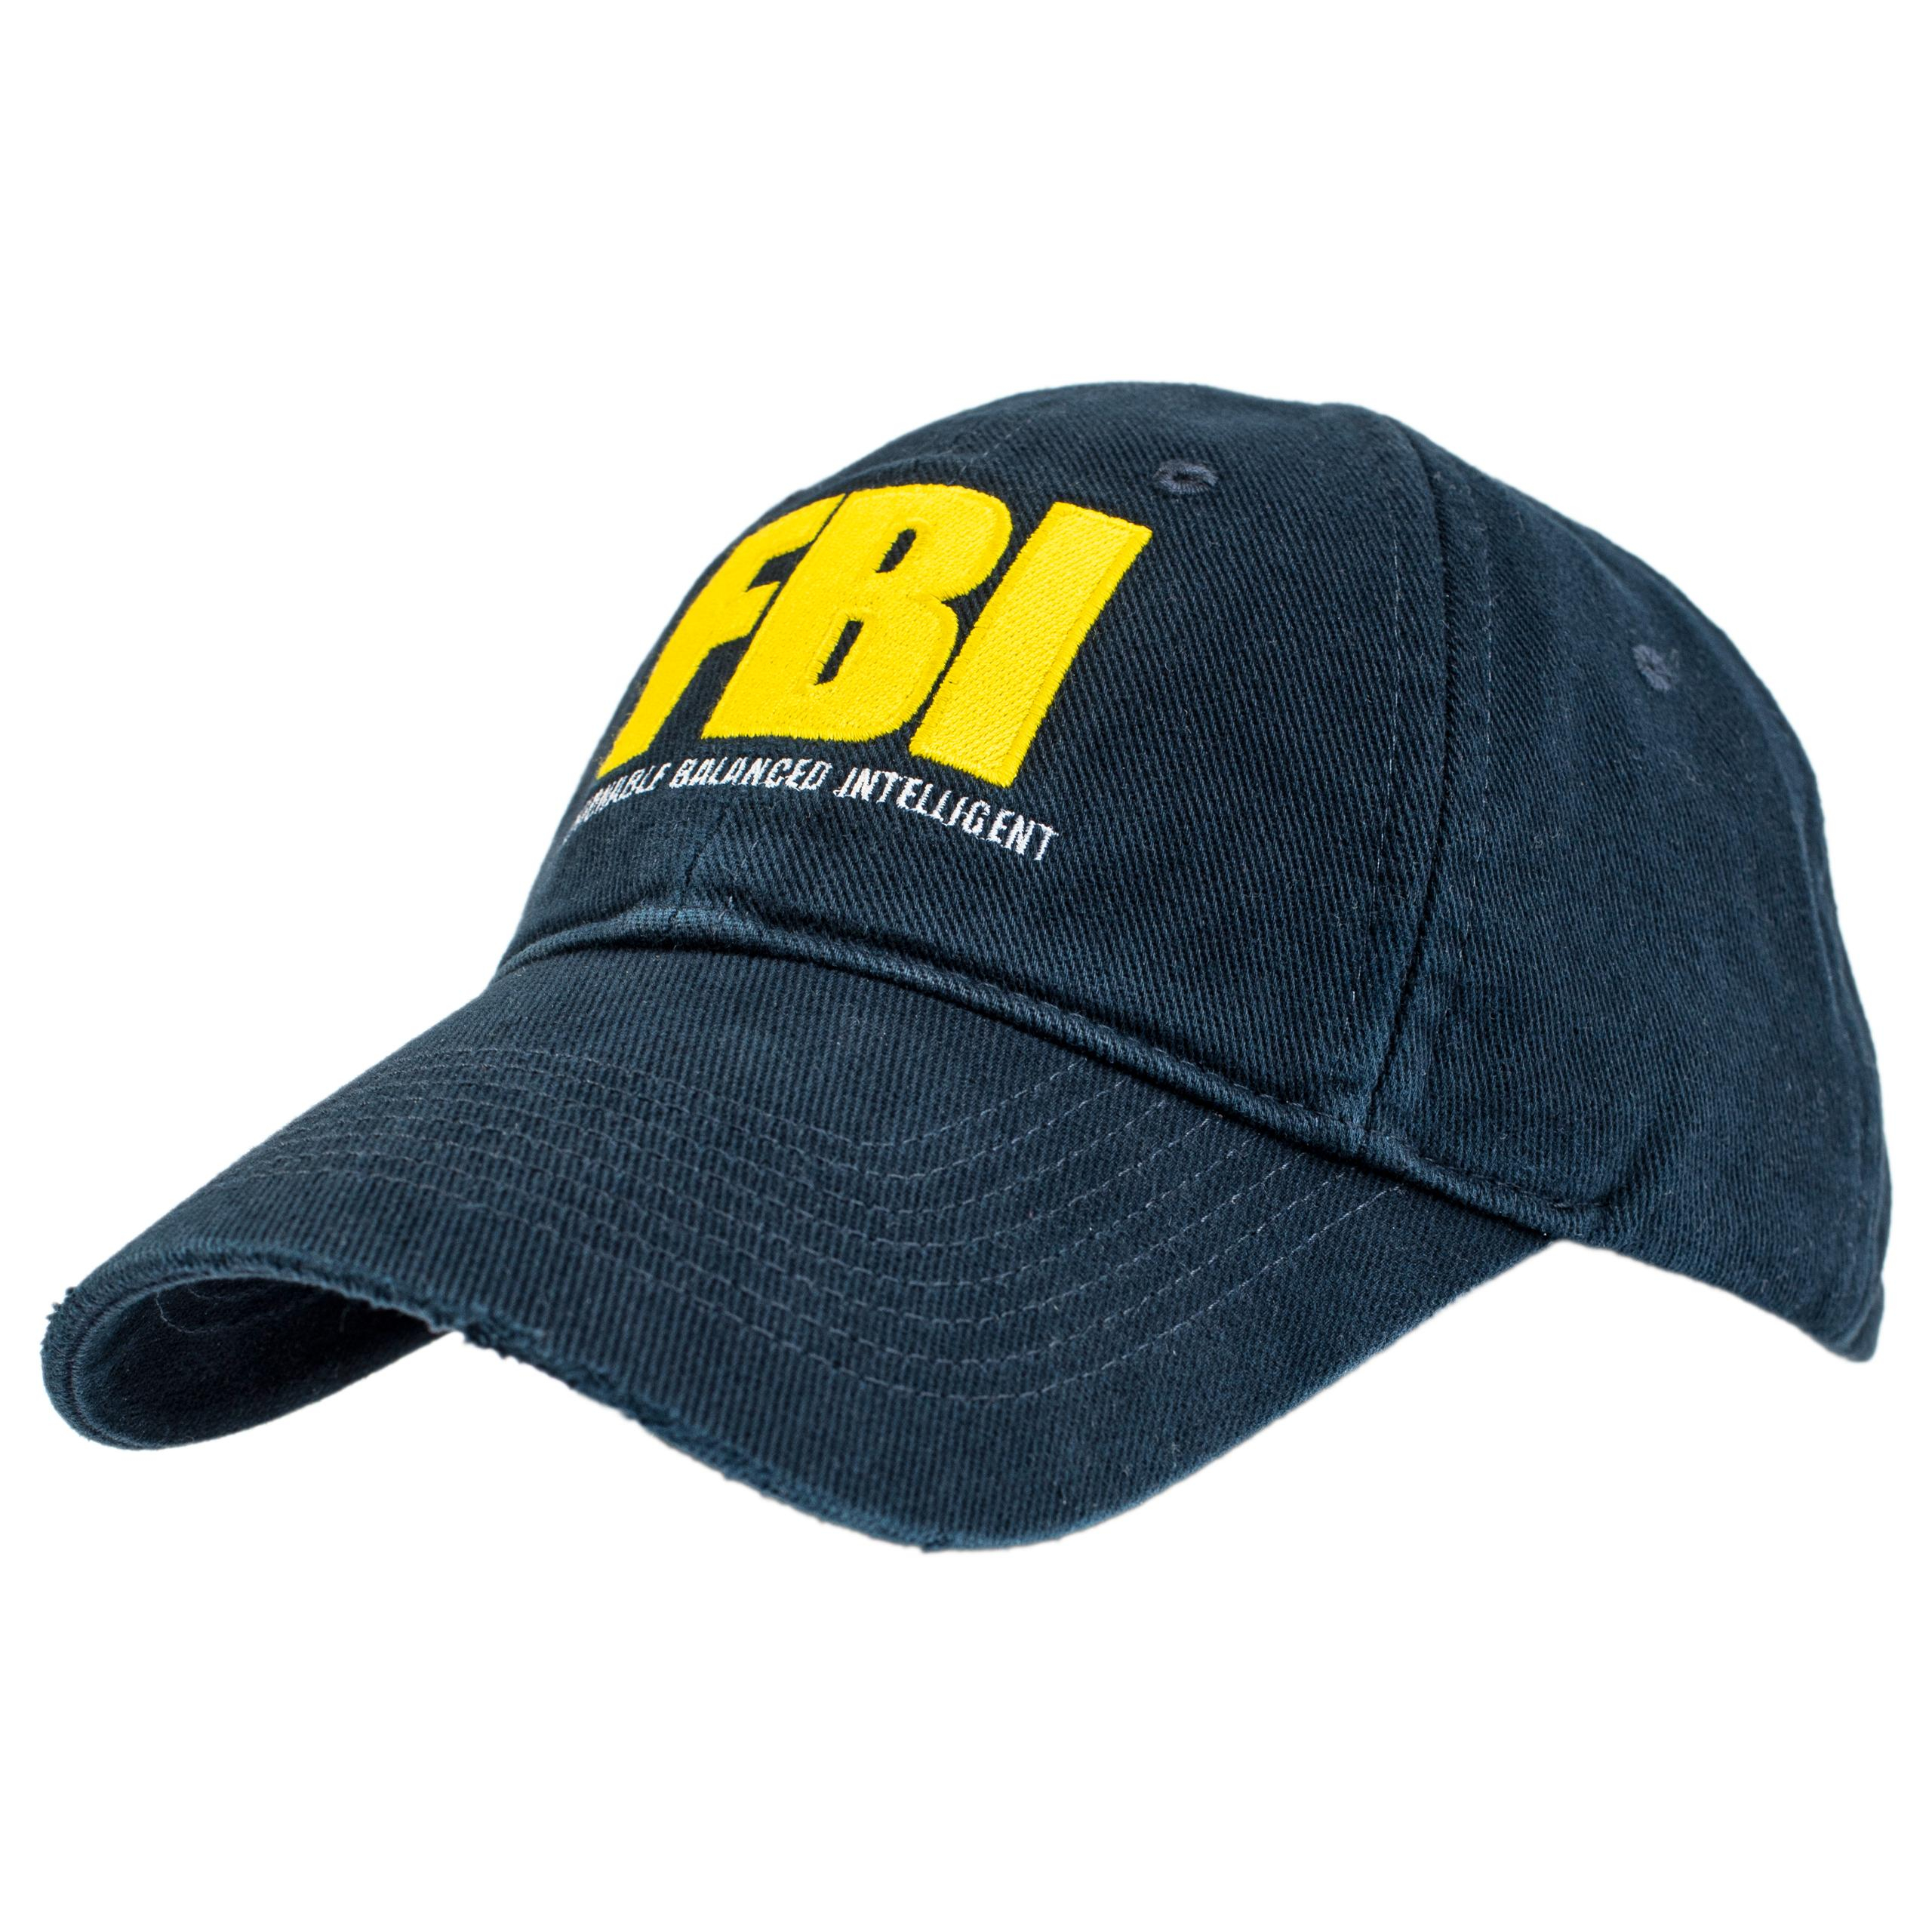 Кепка с нашивкой FBI Balenciaga 680740/410B2/4075, размер L;S 680740/410B2/4075 - фото 2